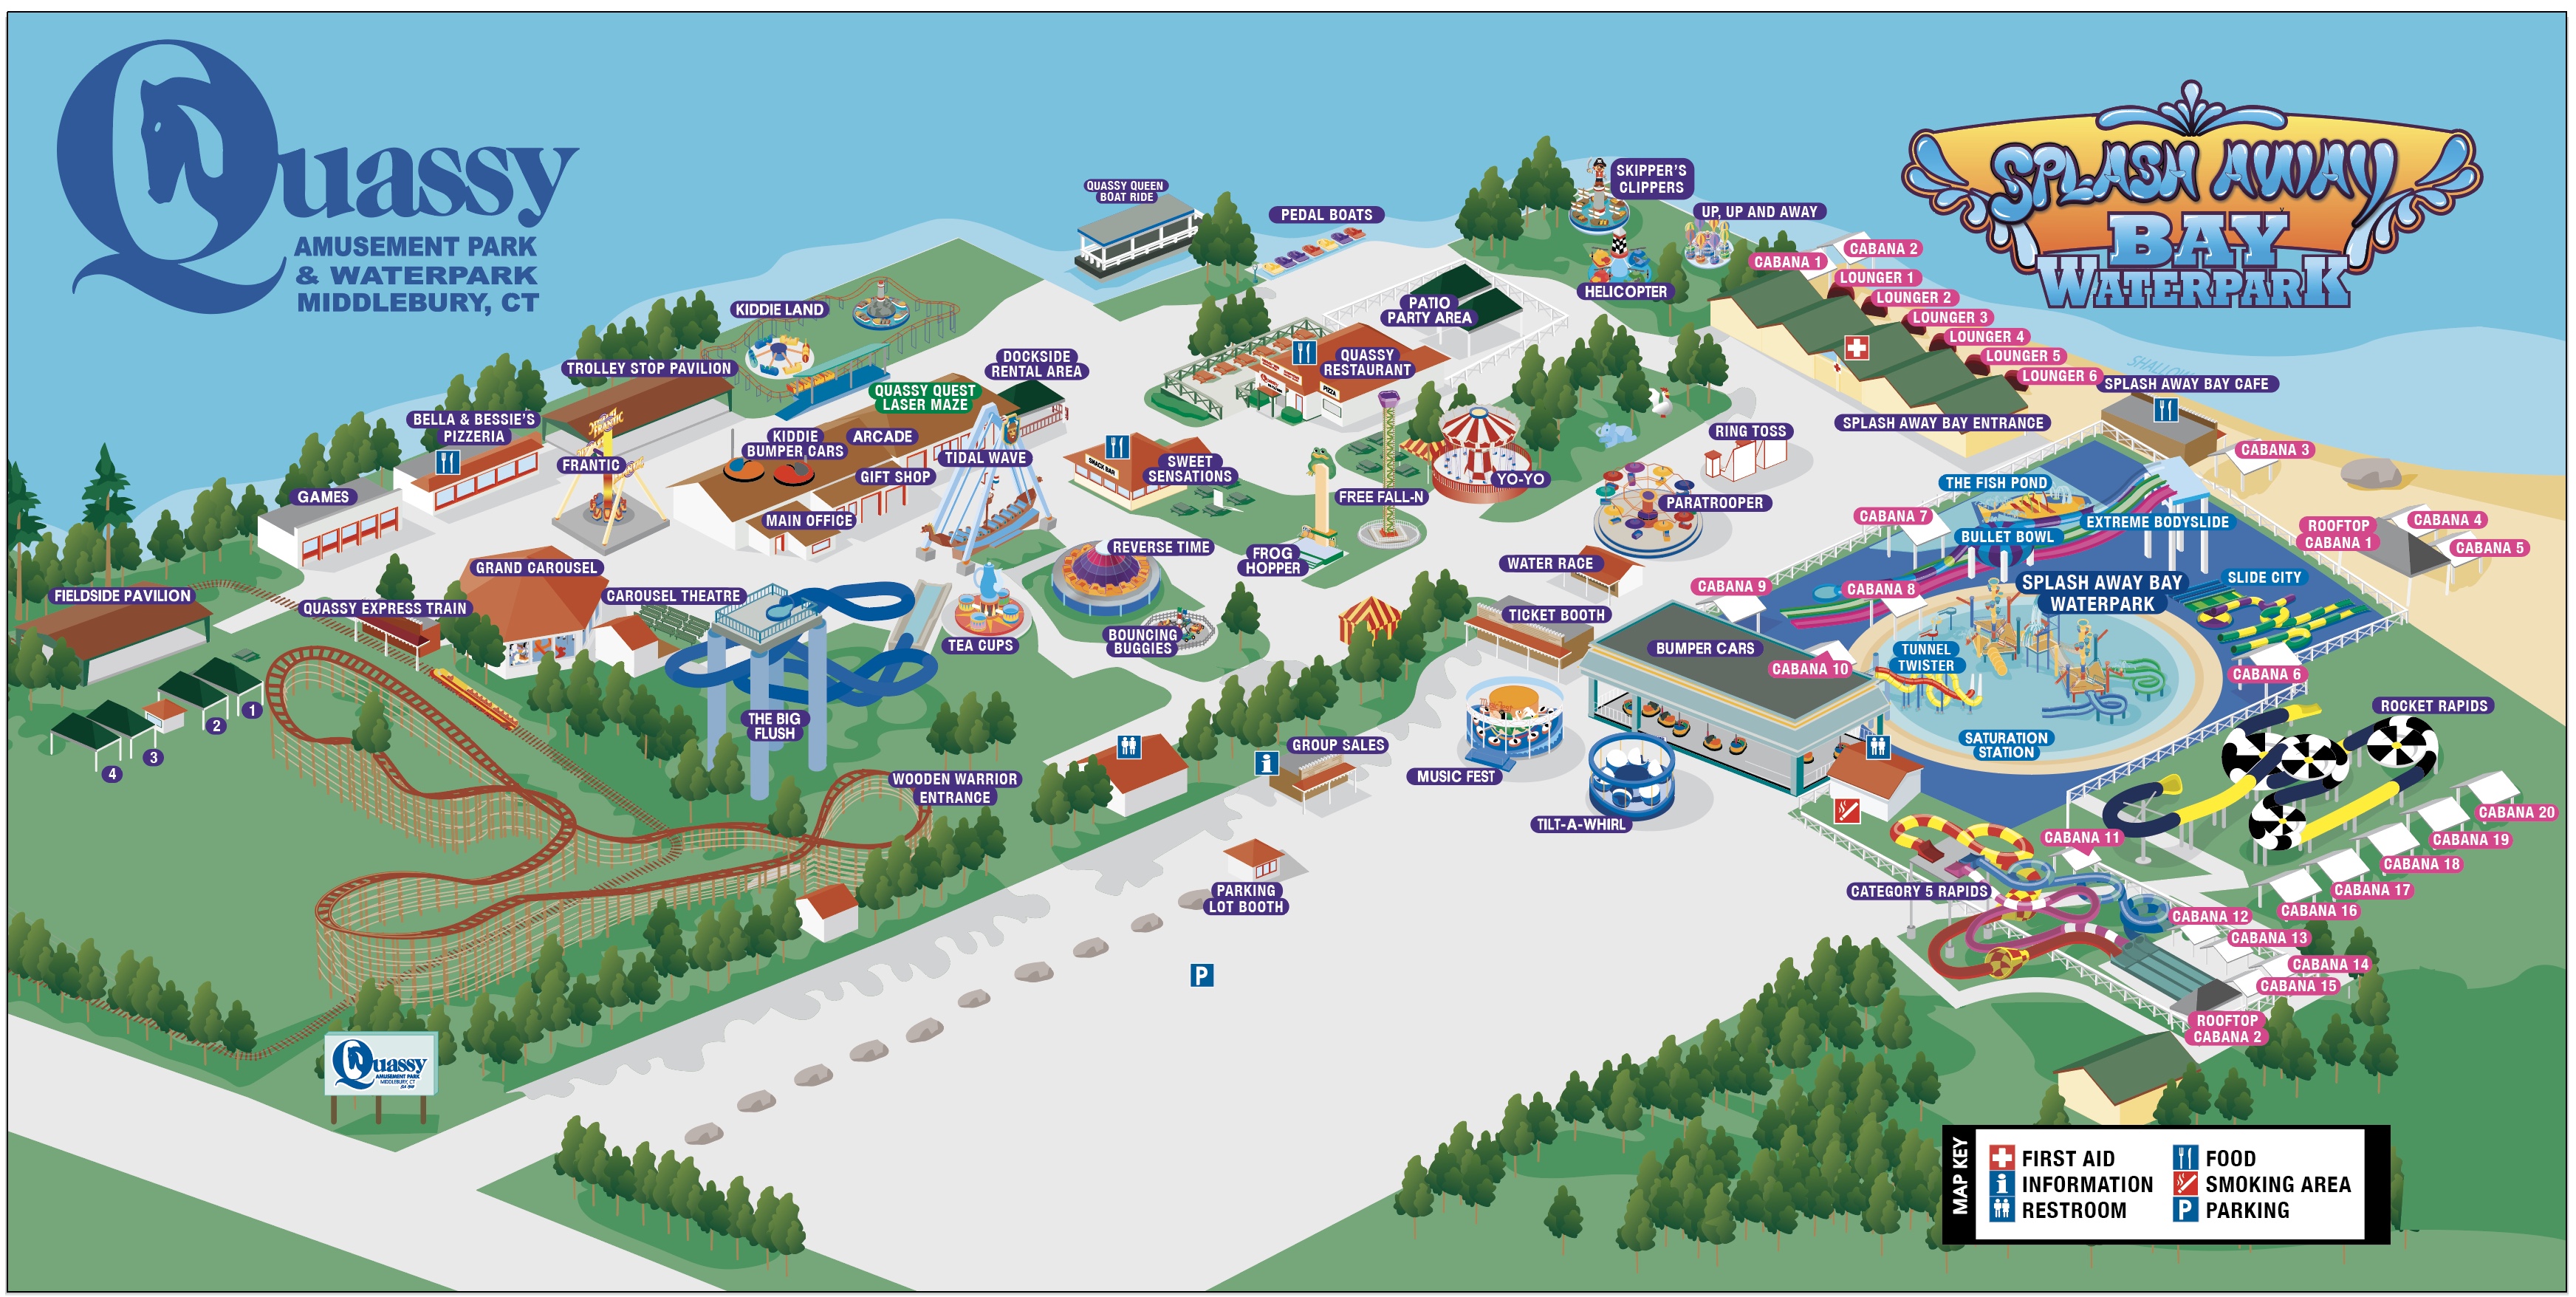 Map of Quassy Amusement Park